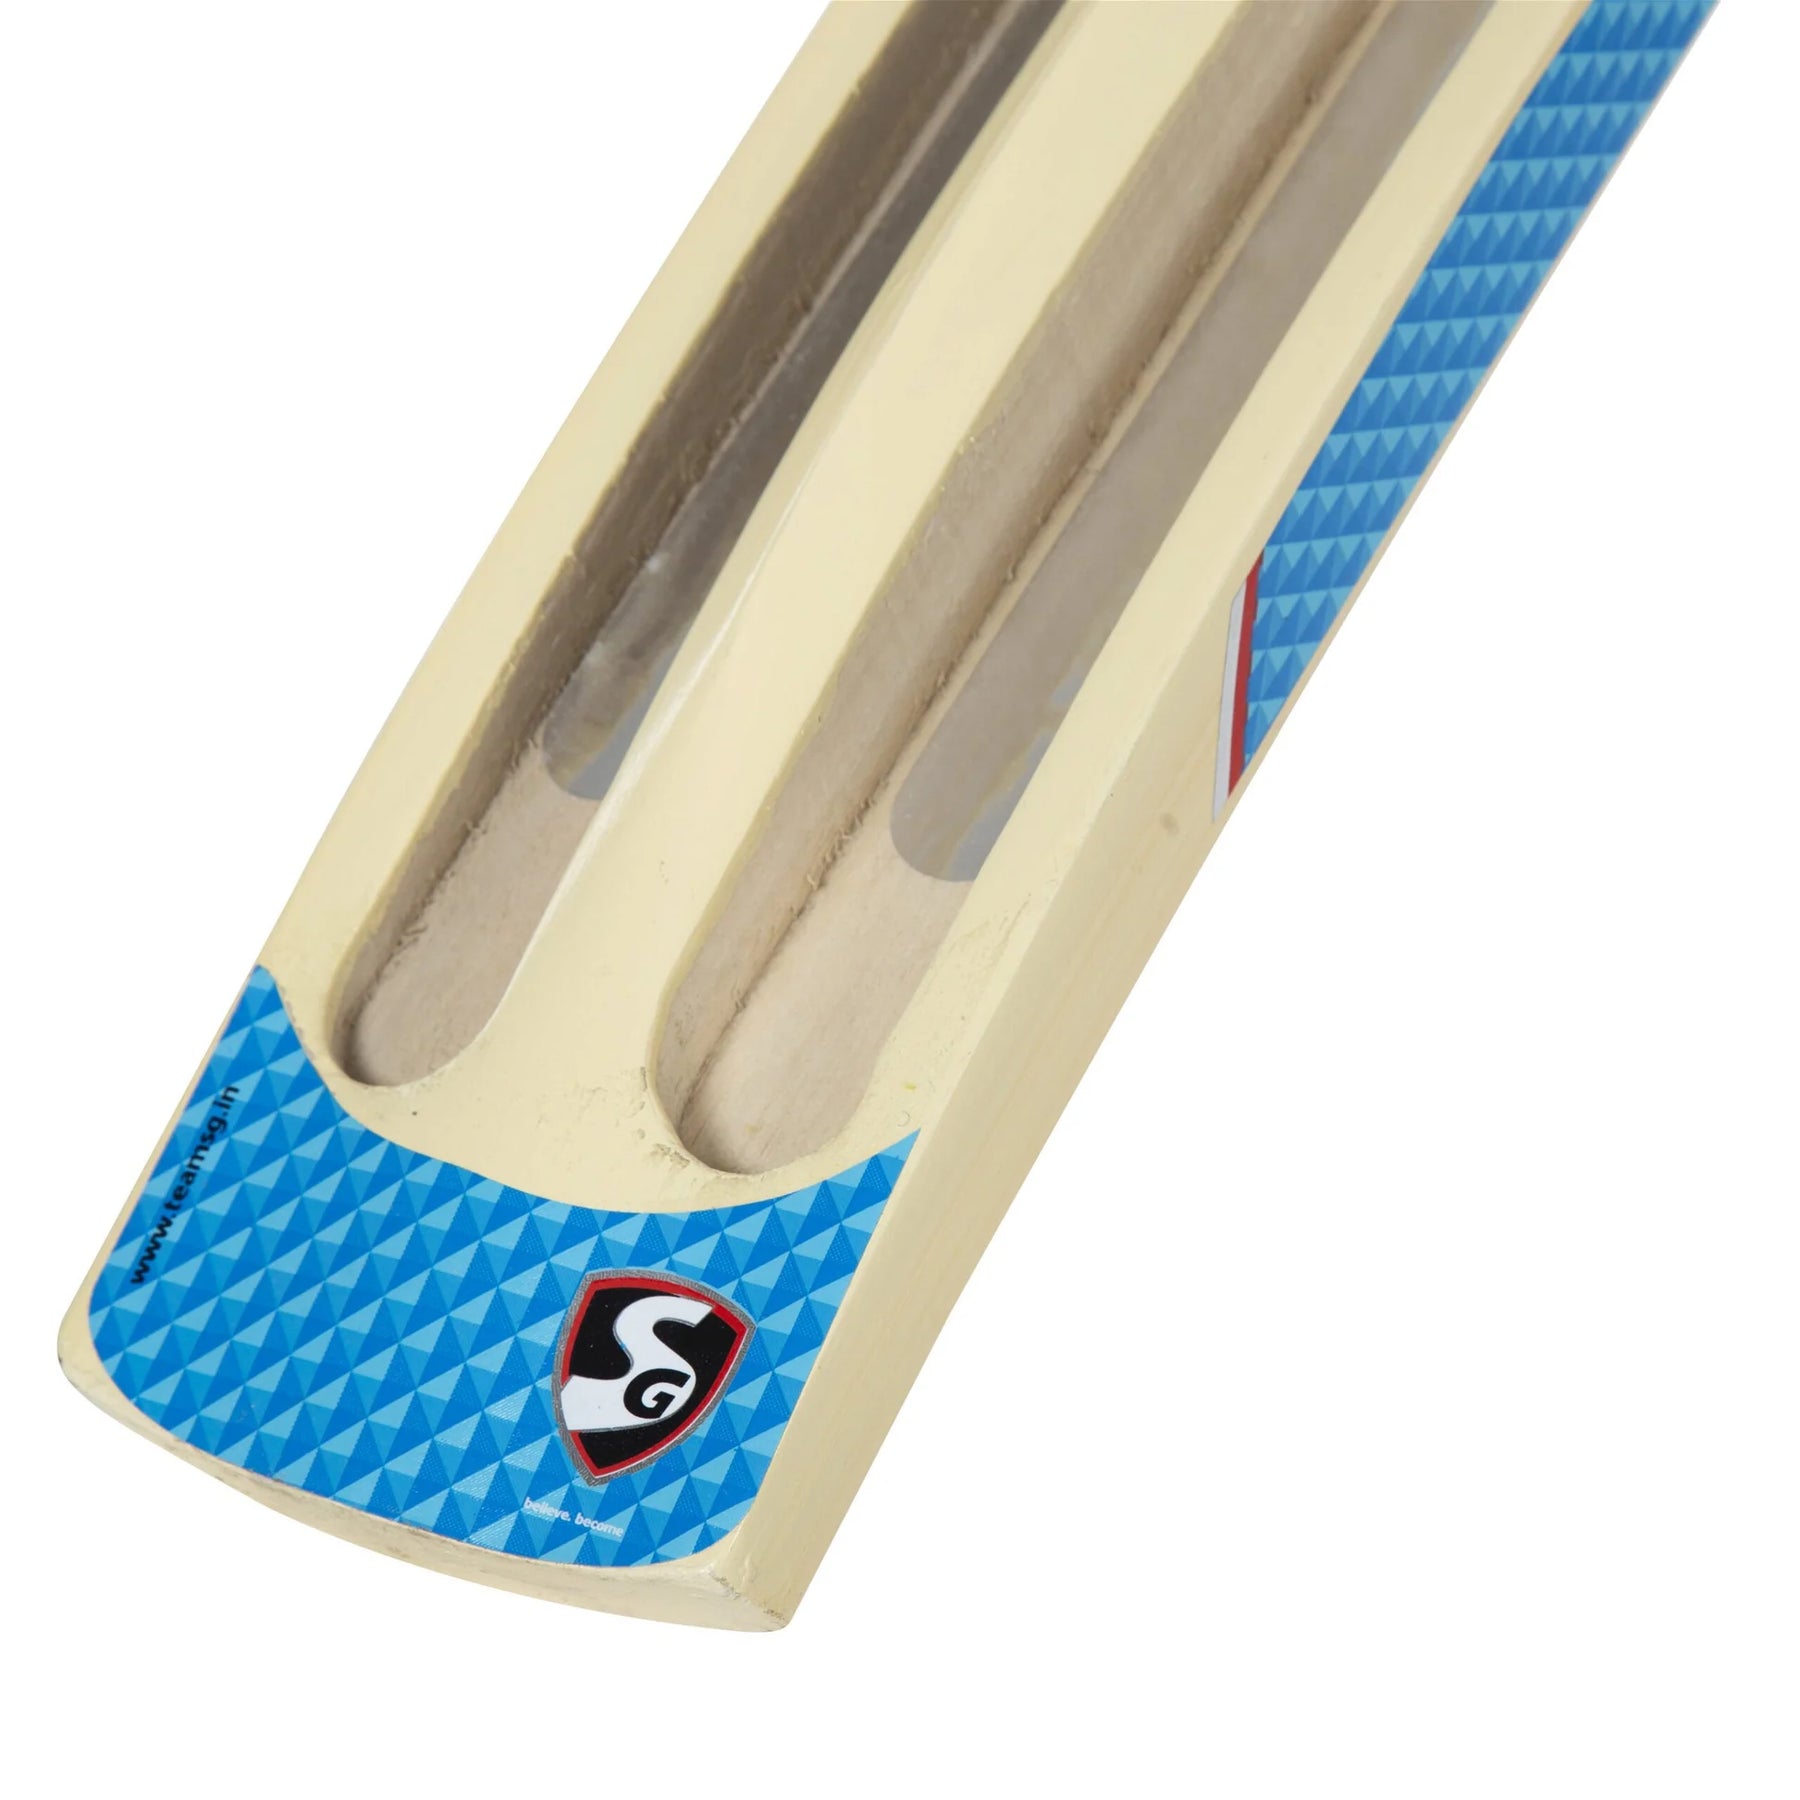 SG Kashmir Willow Cricket Bat (Tennis ball) T-800